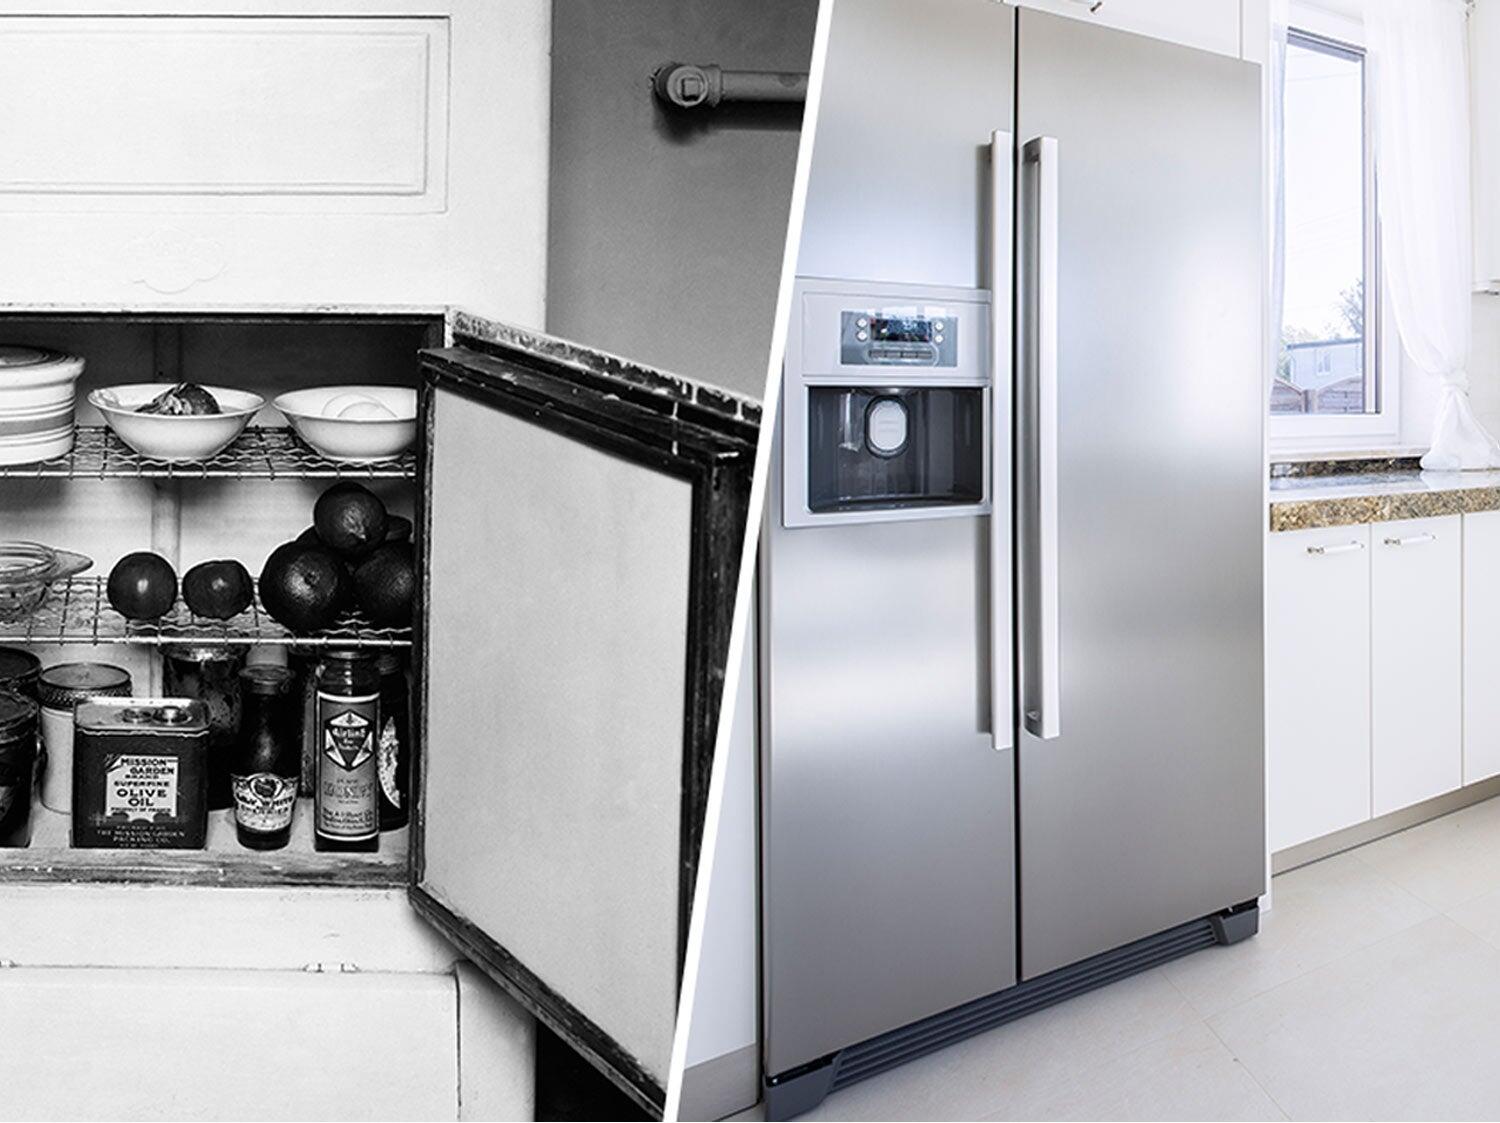 Comment disposer les aliments dans un réfrigérateur combiné ?